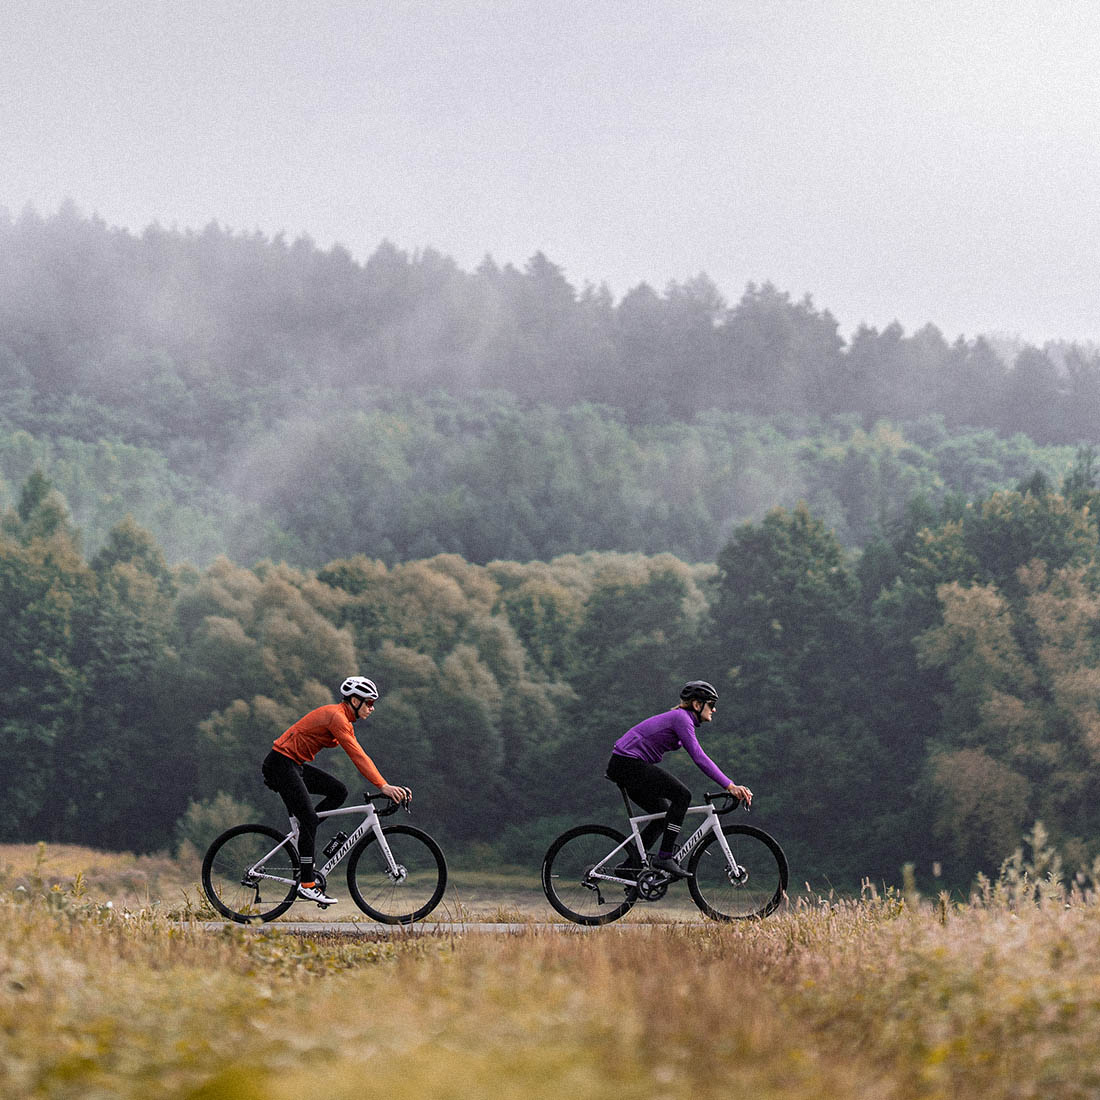 Rennradfahren im Herbst muss nicht unangenehm sein, wenn man die richtige Herbst-Radfahrbekleidung hat.